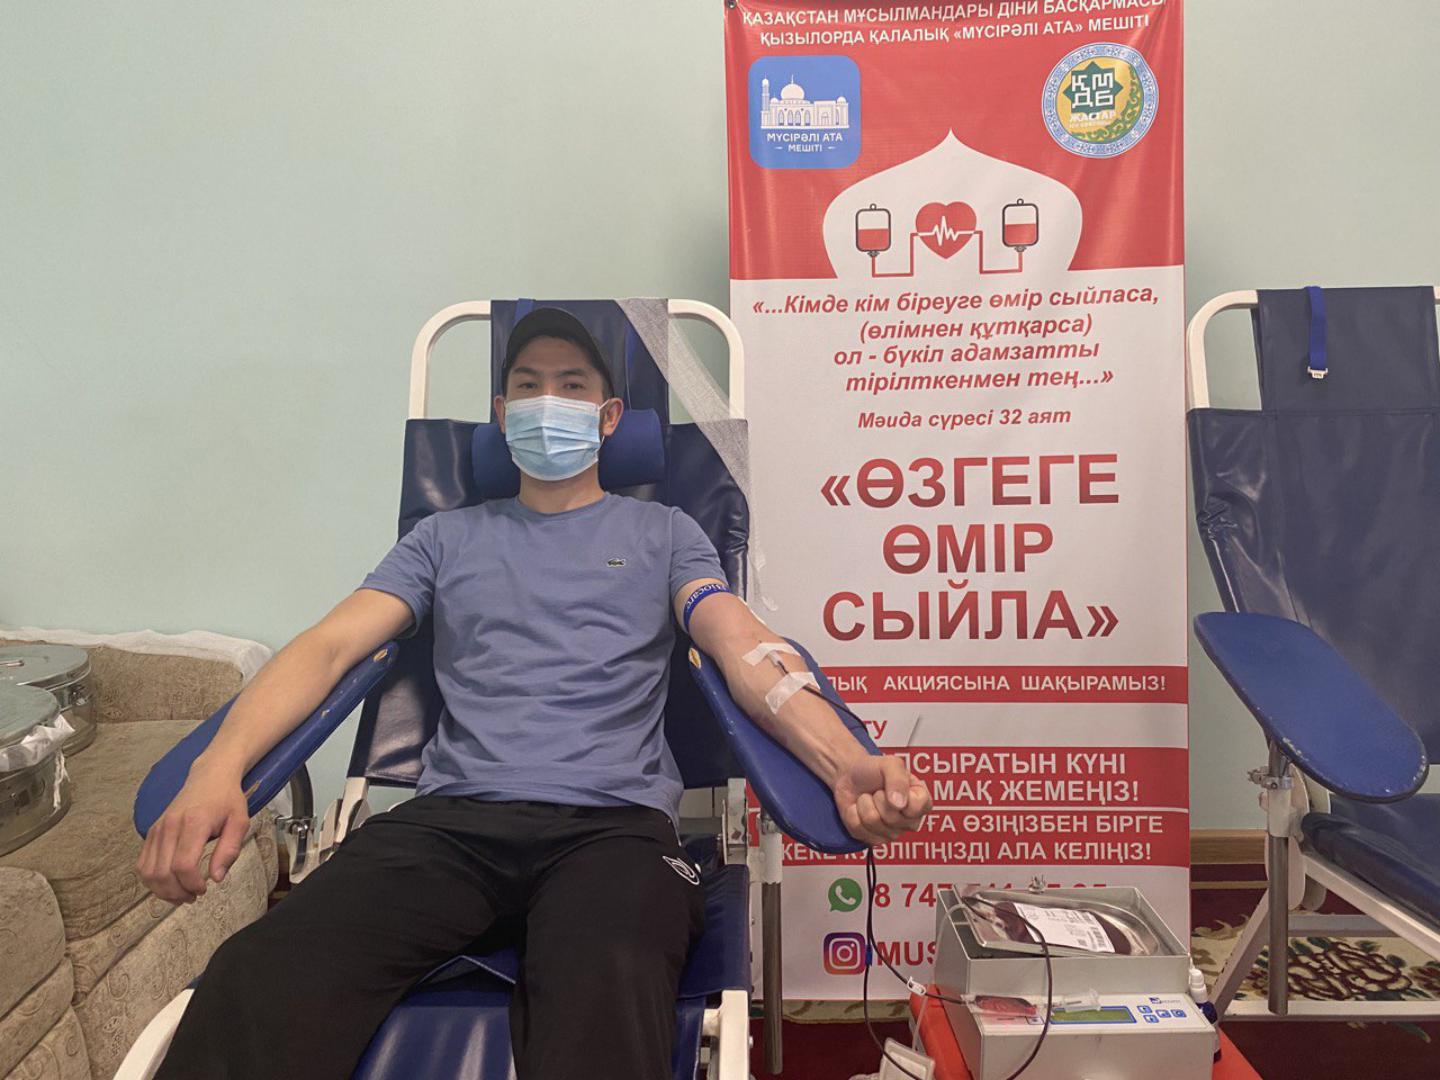 Акция «Өзгеге өмір сыйла» прошла в Кызылорде